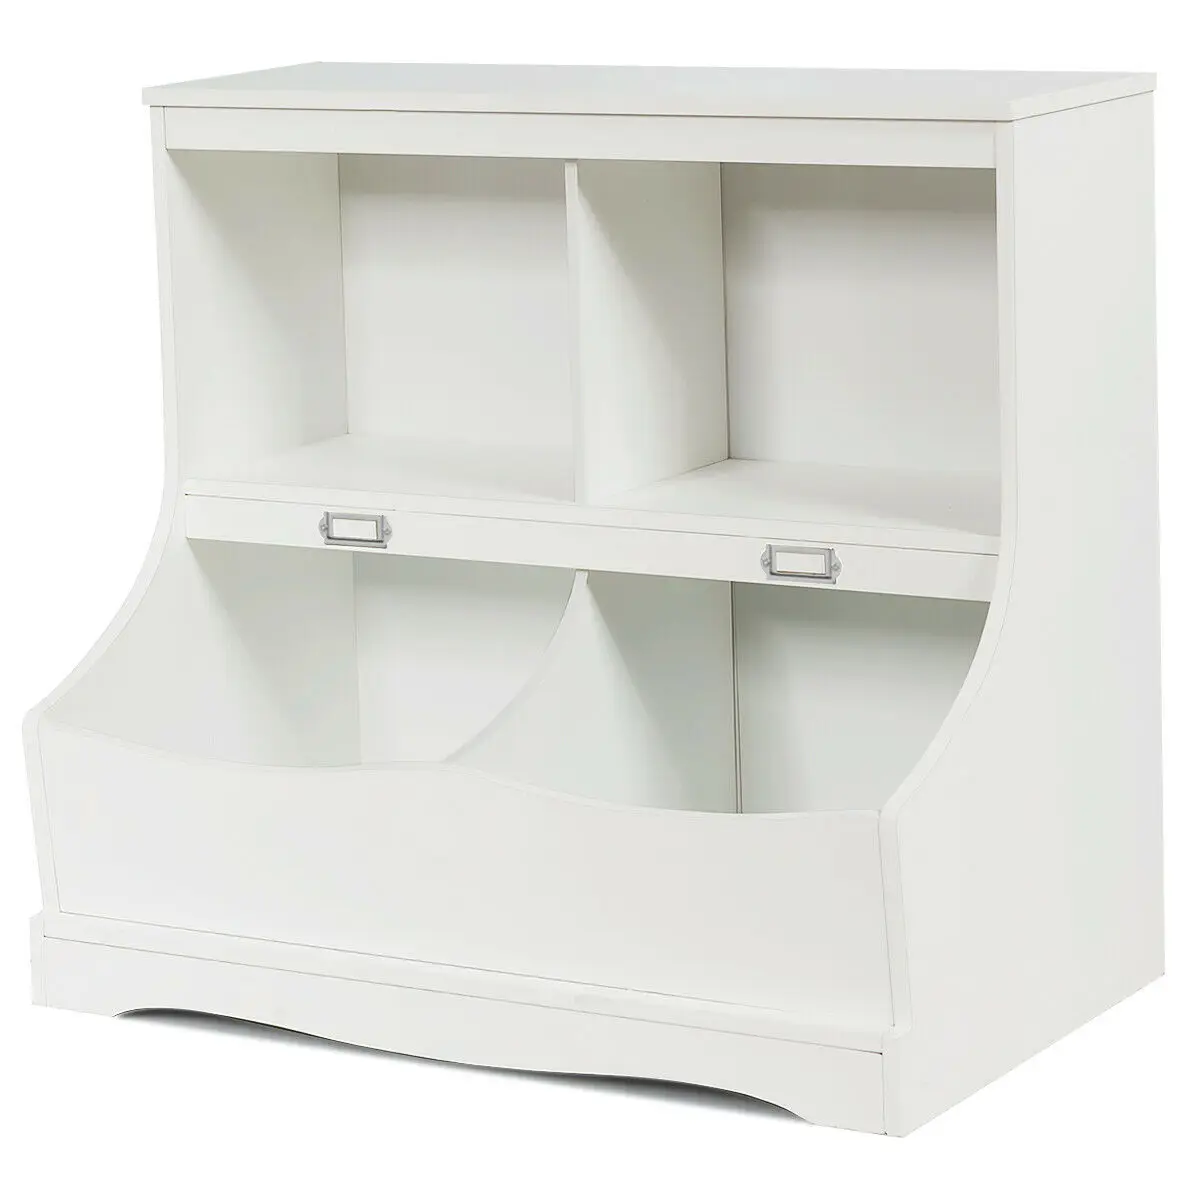 Children s Multi-Functional Bookcase Toy Storage Bin Kids Floor Cabinet White/Gray  HW63982